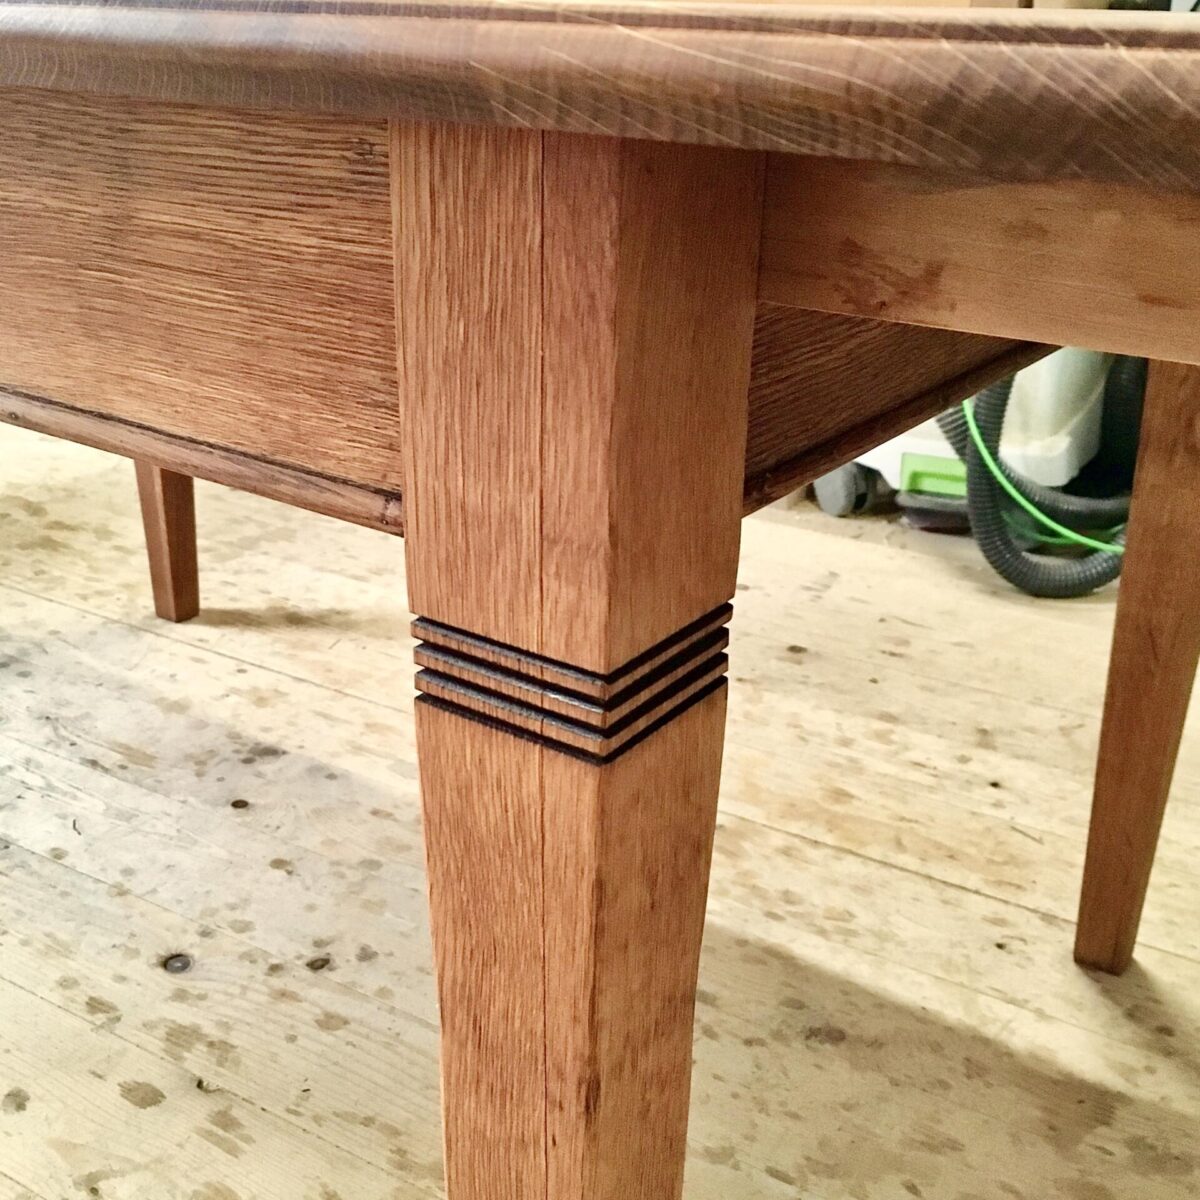 Massivholz Eichen Tisch 226cm ausgezogen mal 100cm höhe 76cm. Die Verlängerungselemente sind je 44cm, und können praktisch im Bauch des Tisches eingeklappt werden. Die kleinste Variante ist 138cm mal 100cm. 